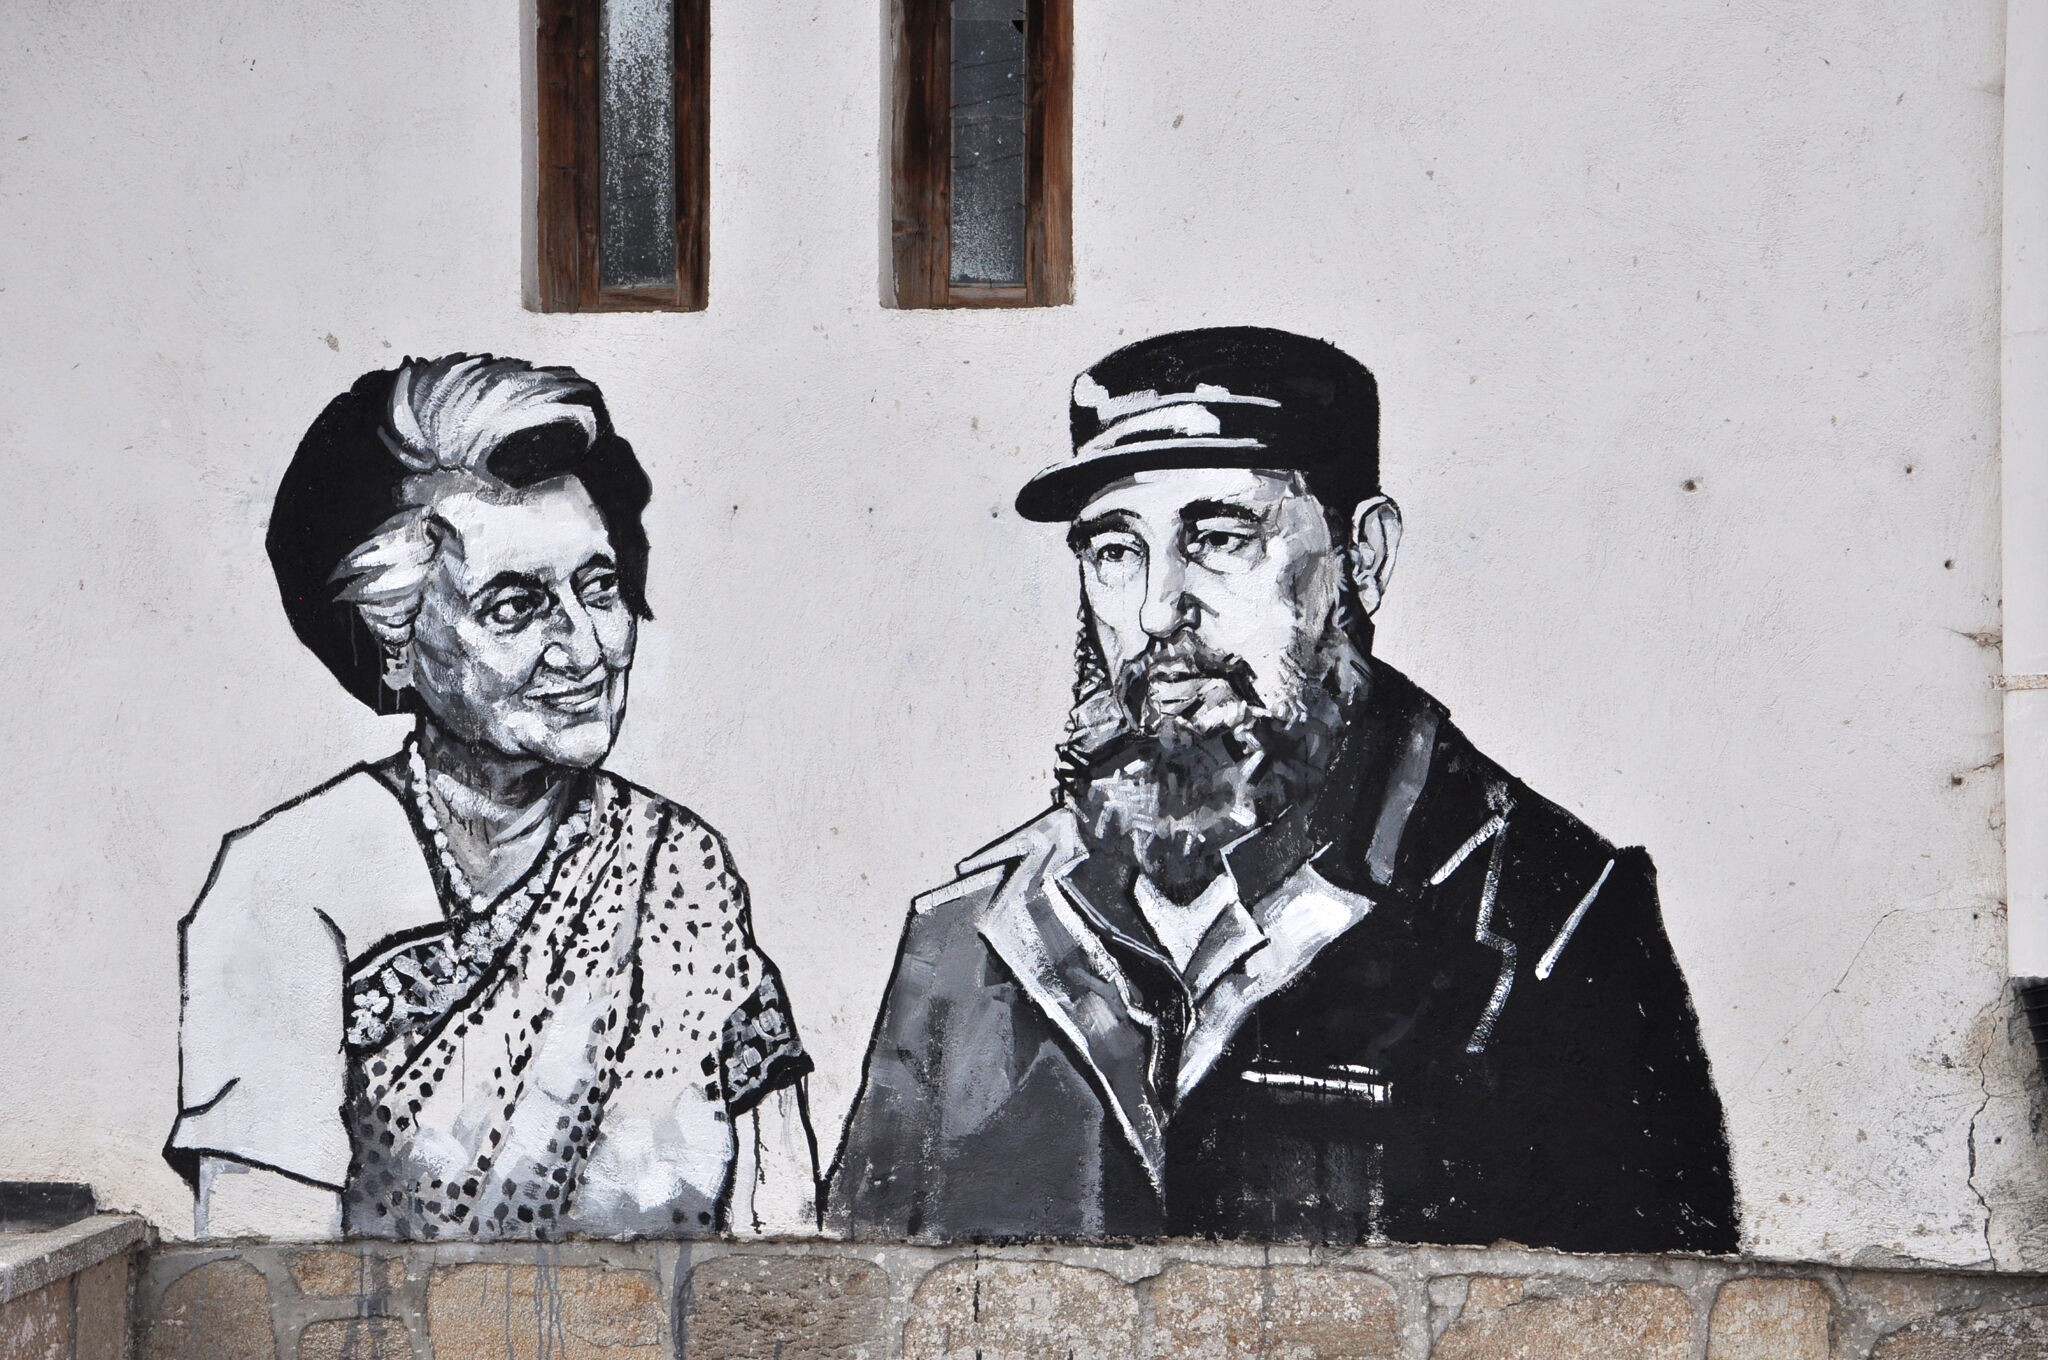 Ventzi Piriankov, Katarzyna Piriankov&mdash;Indira Gandhi and Fidel Castro